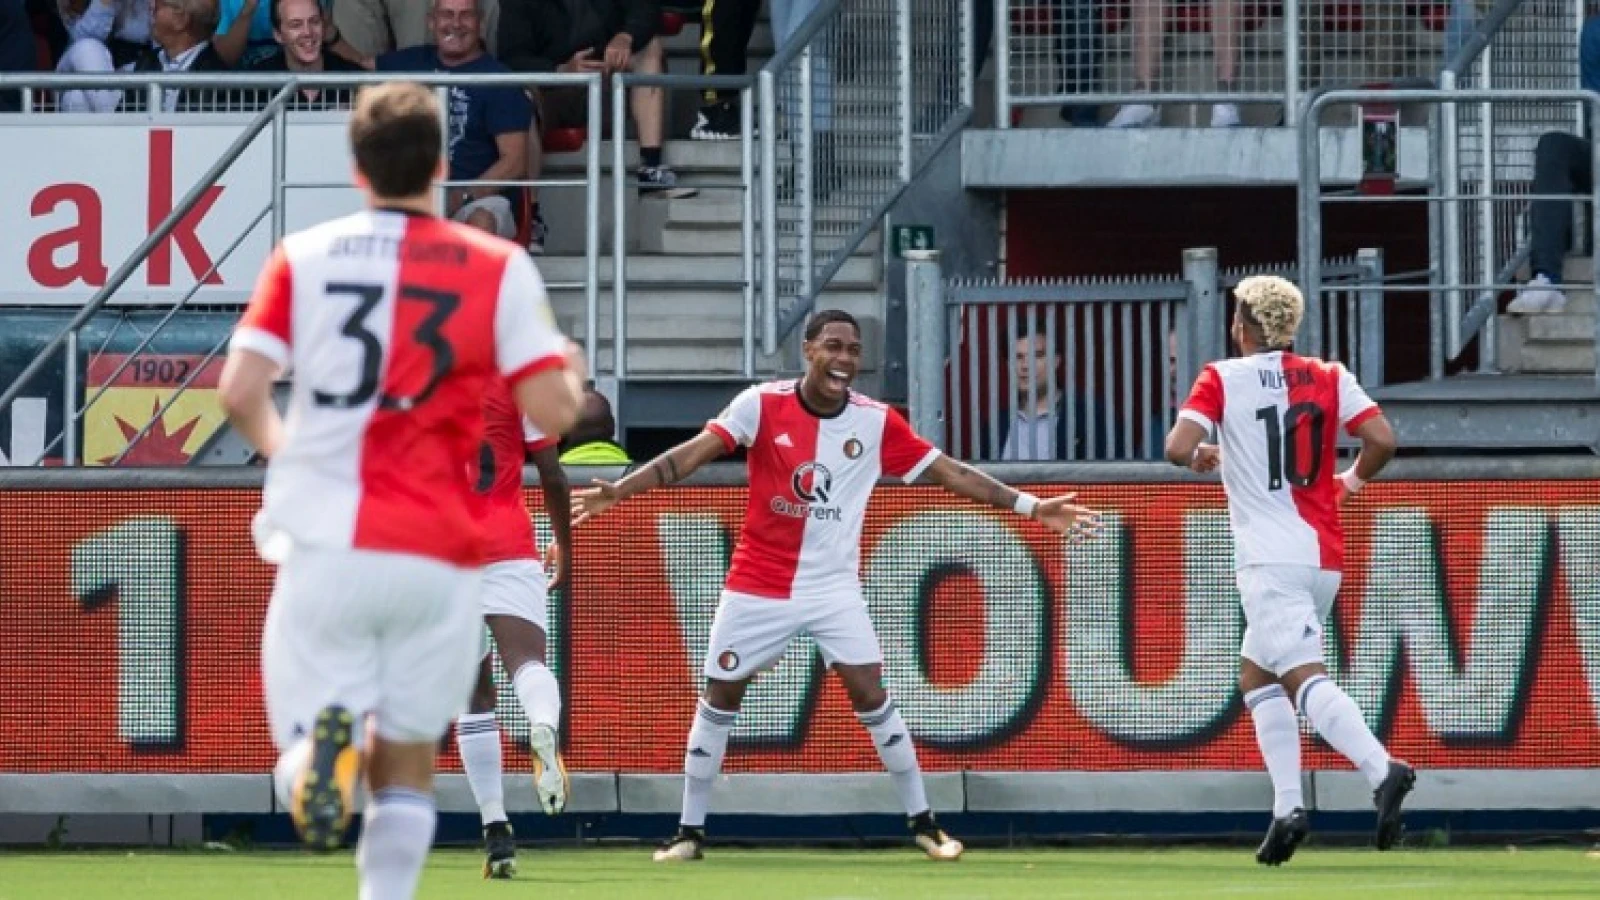 Mattheij teleurgesteld: 'We moesten profiteren van het slechte spel van Feyenoord'